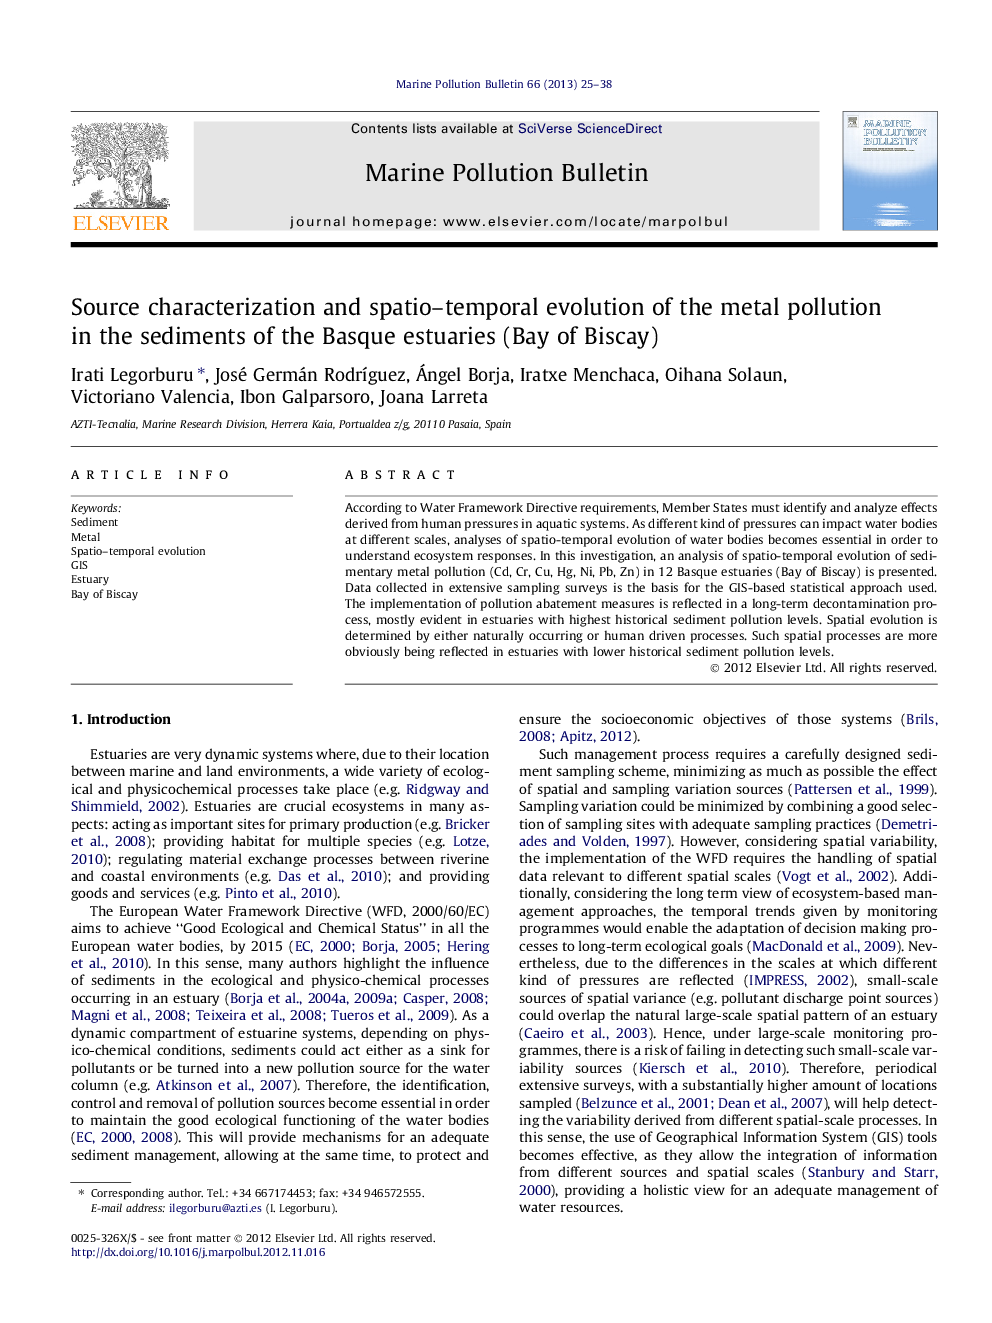 خصوصیات منبع و تکامل فضایی و زمانی آلودگی فلزات در رسوبات استوایی های باسک (خلیج بیسکی) 